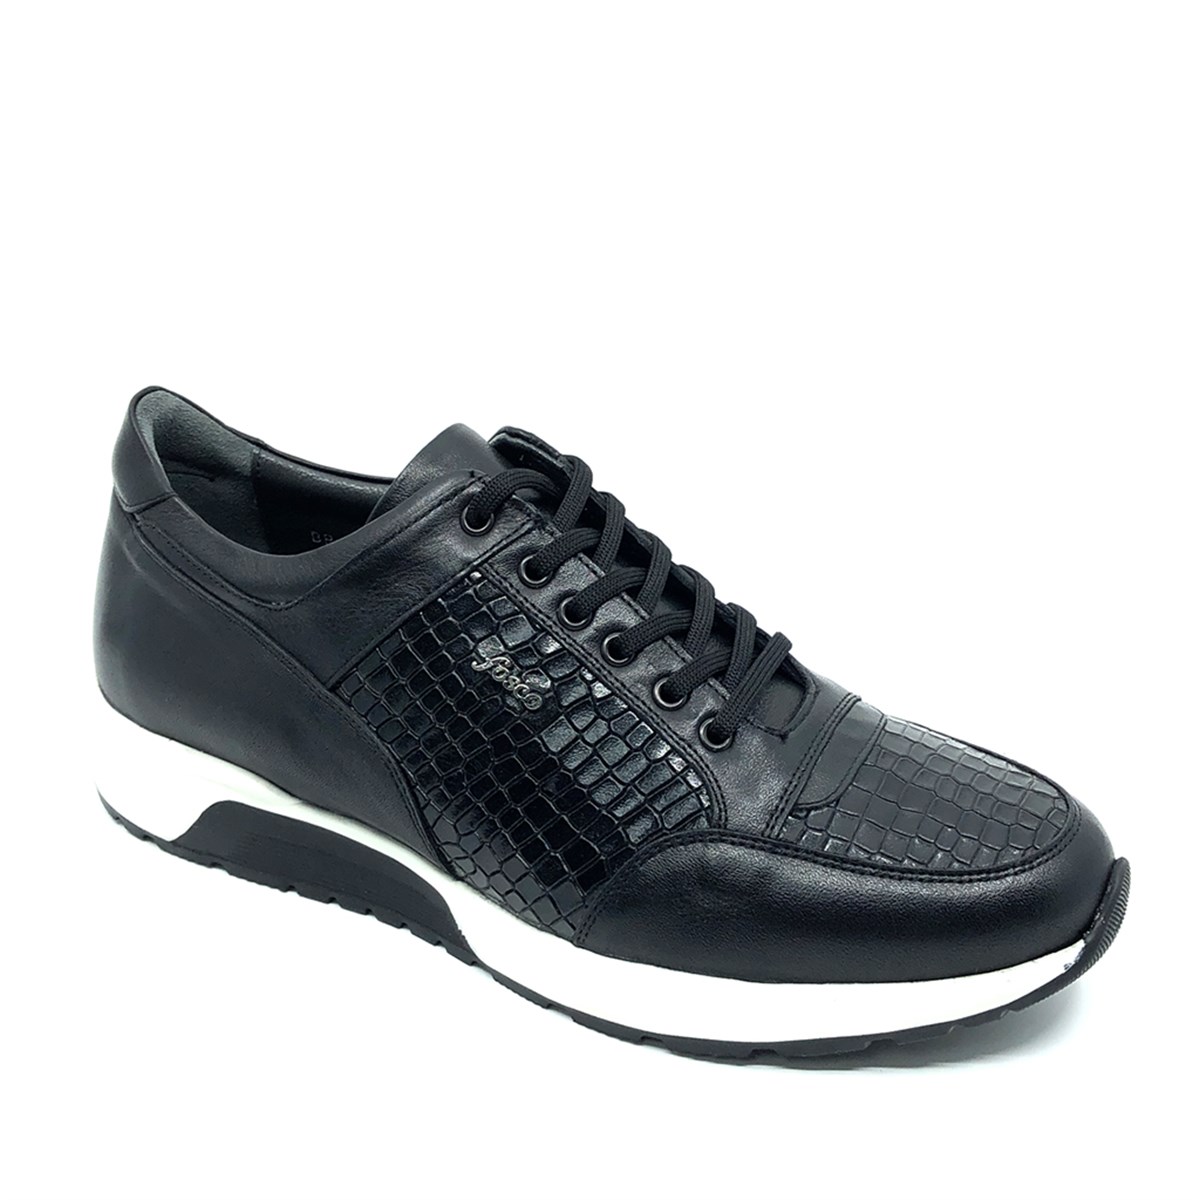 Fosco Sneakers Hakiki Deri Erkek Ayakkabı, Renk: Siyah, Beden: 40